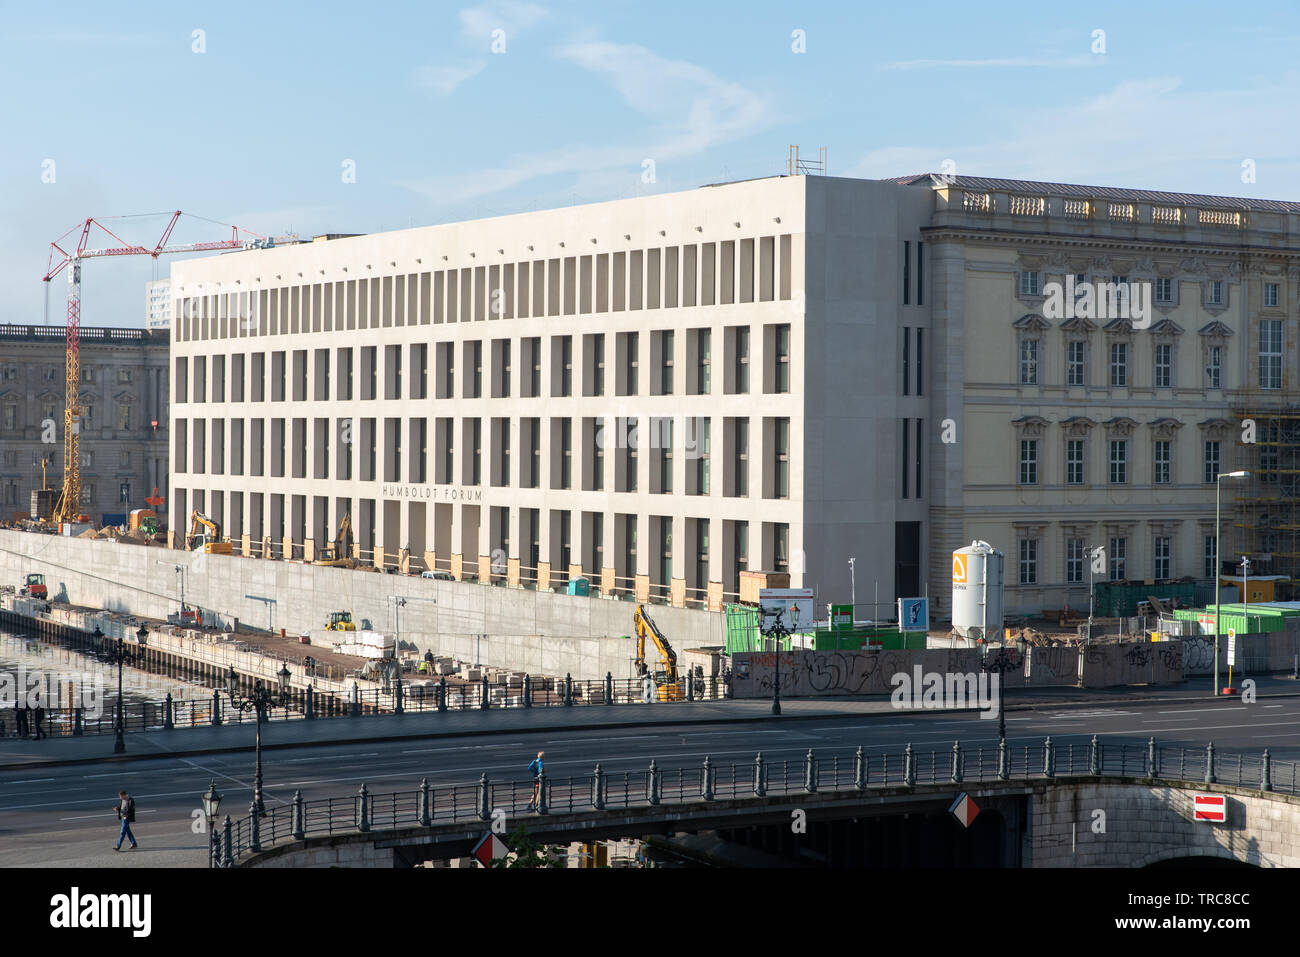 Das Humboldt-forum, einem neuen kulturellen Viertel im Zentrum von Berlin, der Hauptstadt Deutschlands. Architekt: Franco Stella. Stockfoto